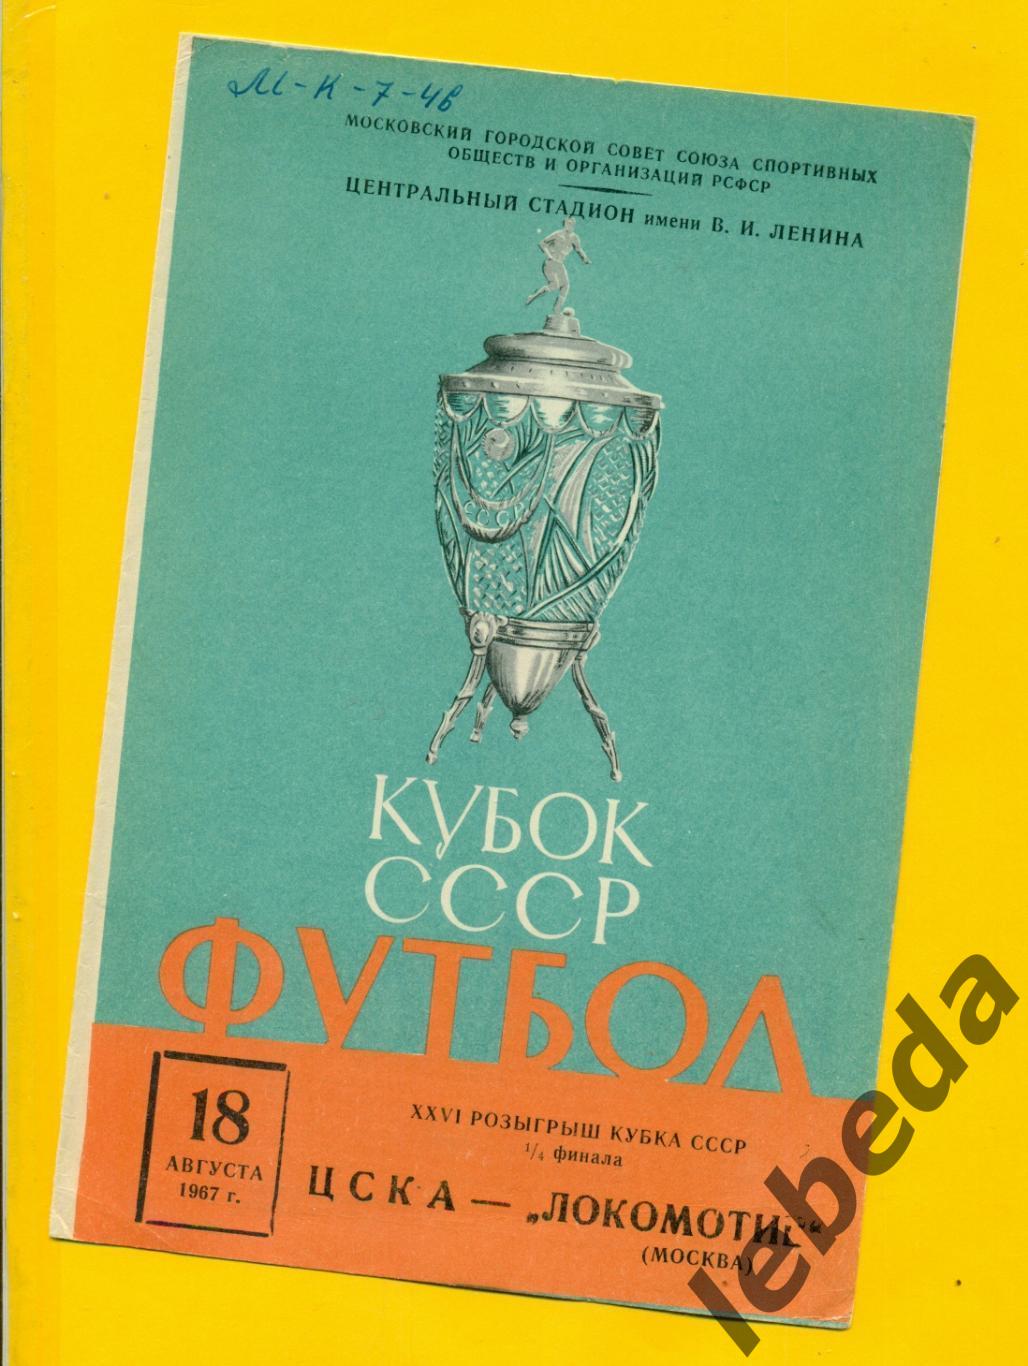 ЦСКА - Локомотив Москва - 1967 г. Кубок СССР - 1/4